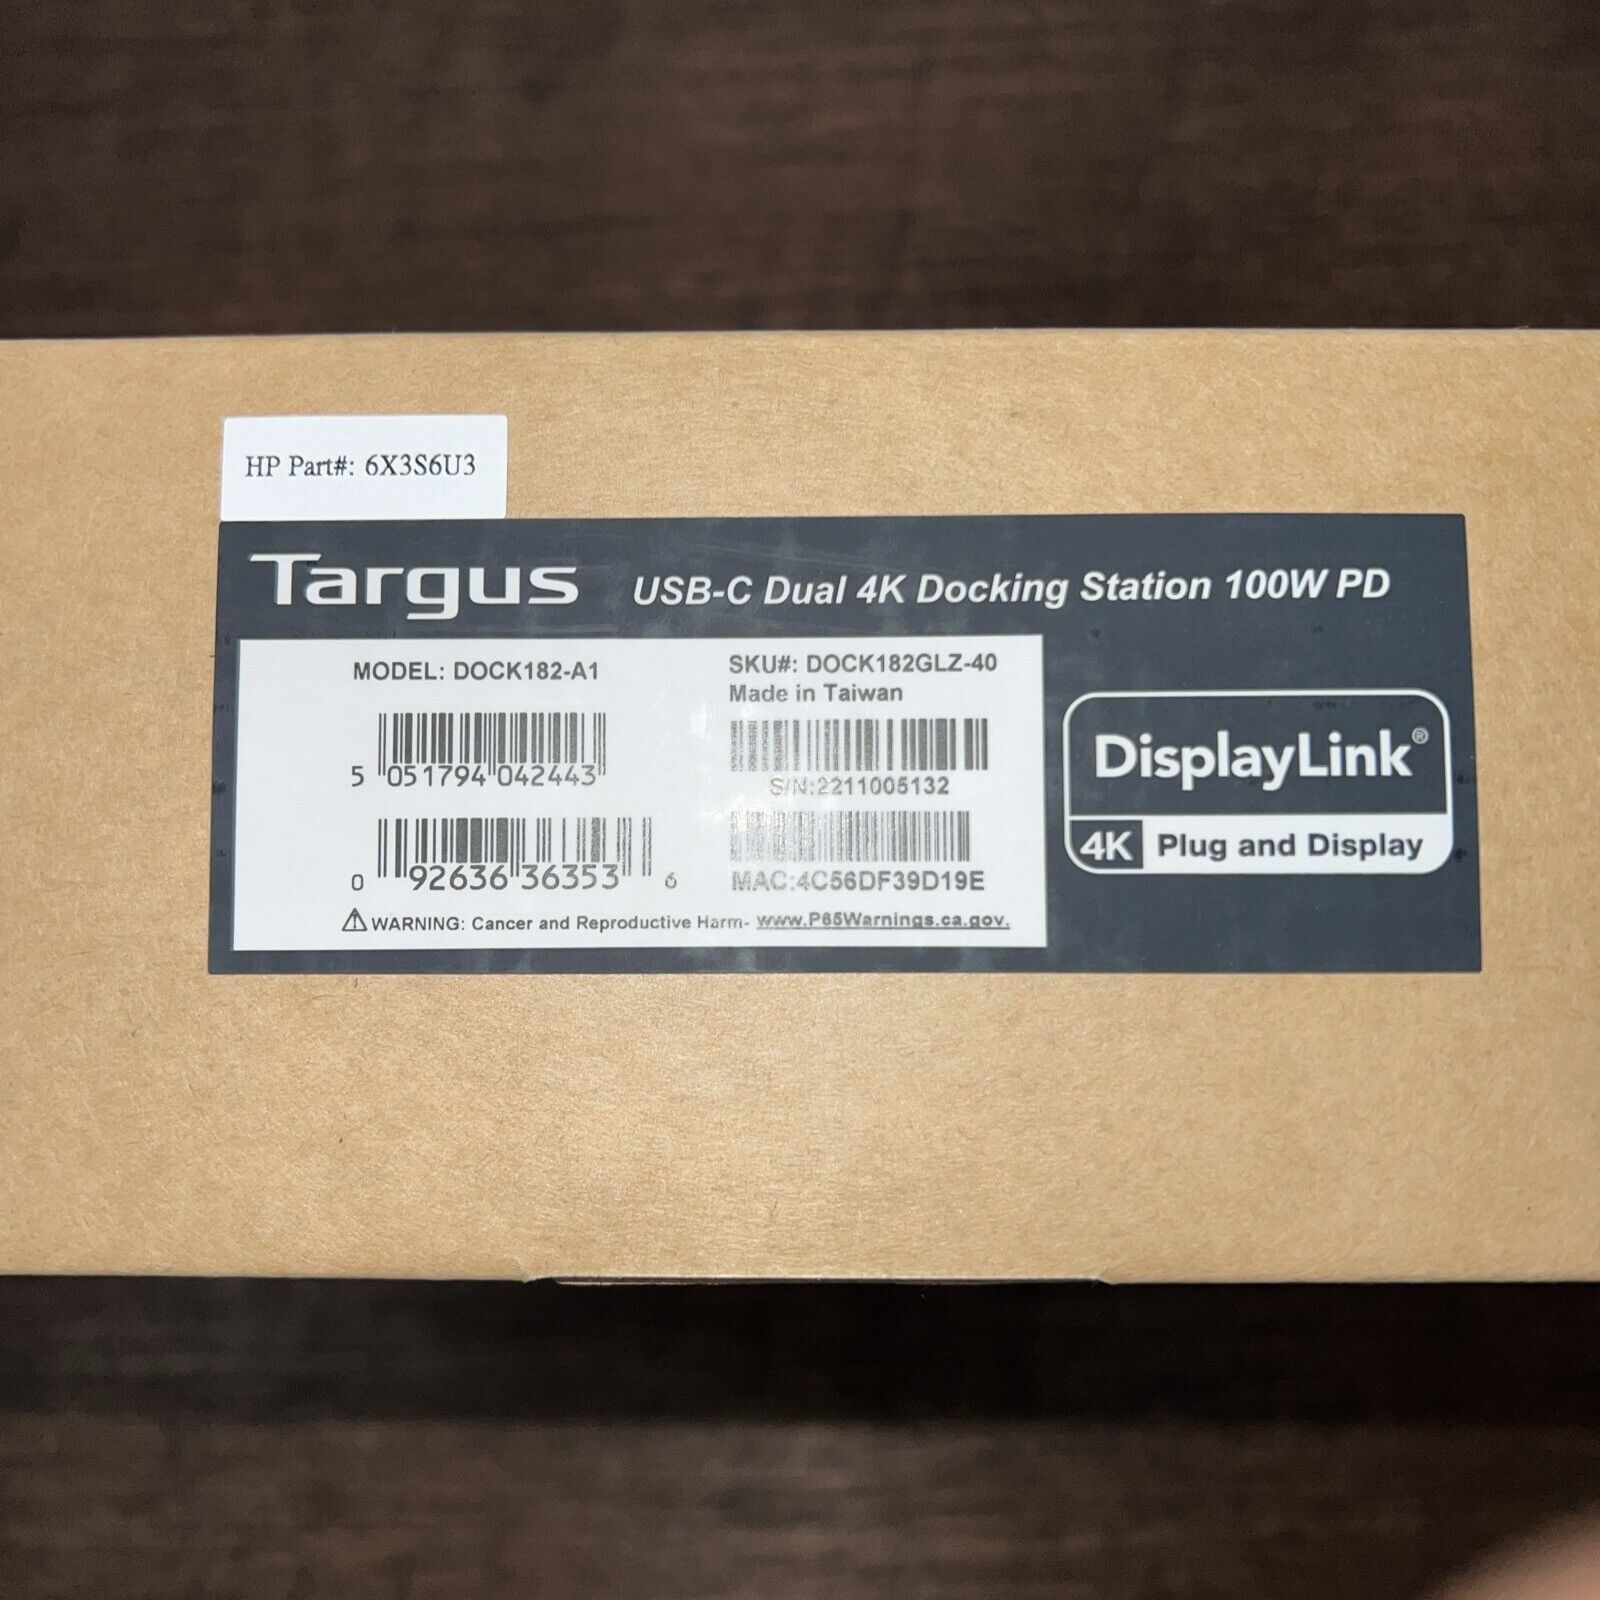 Targus DOCK182-A1 USB-C Dual 4K Docking Station 100W PD DOCK182GLZ-40